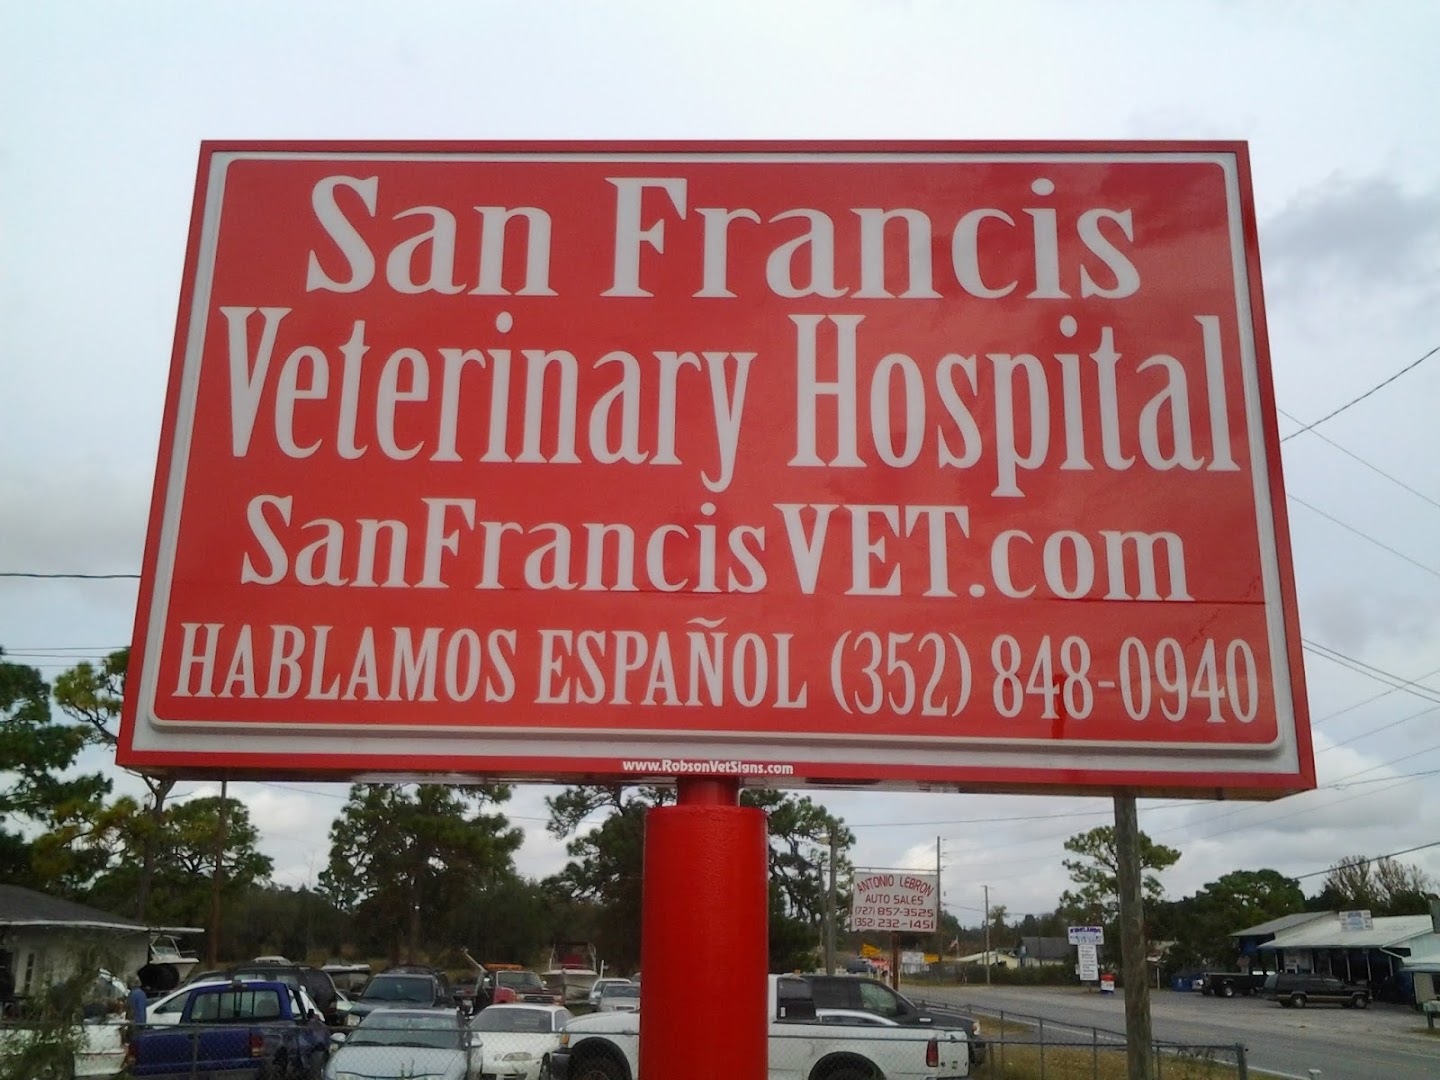 VCA San Francis Animal Hospital